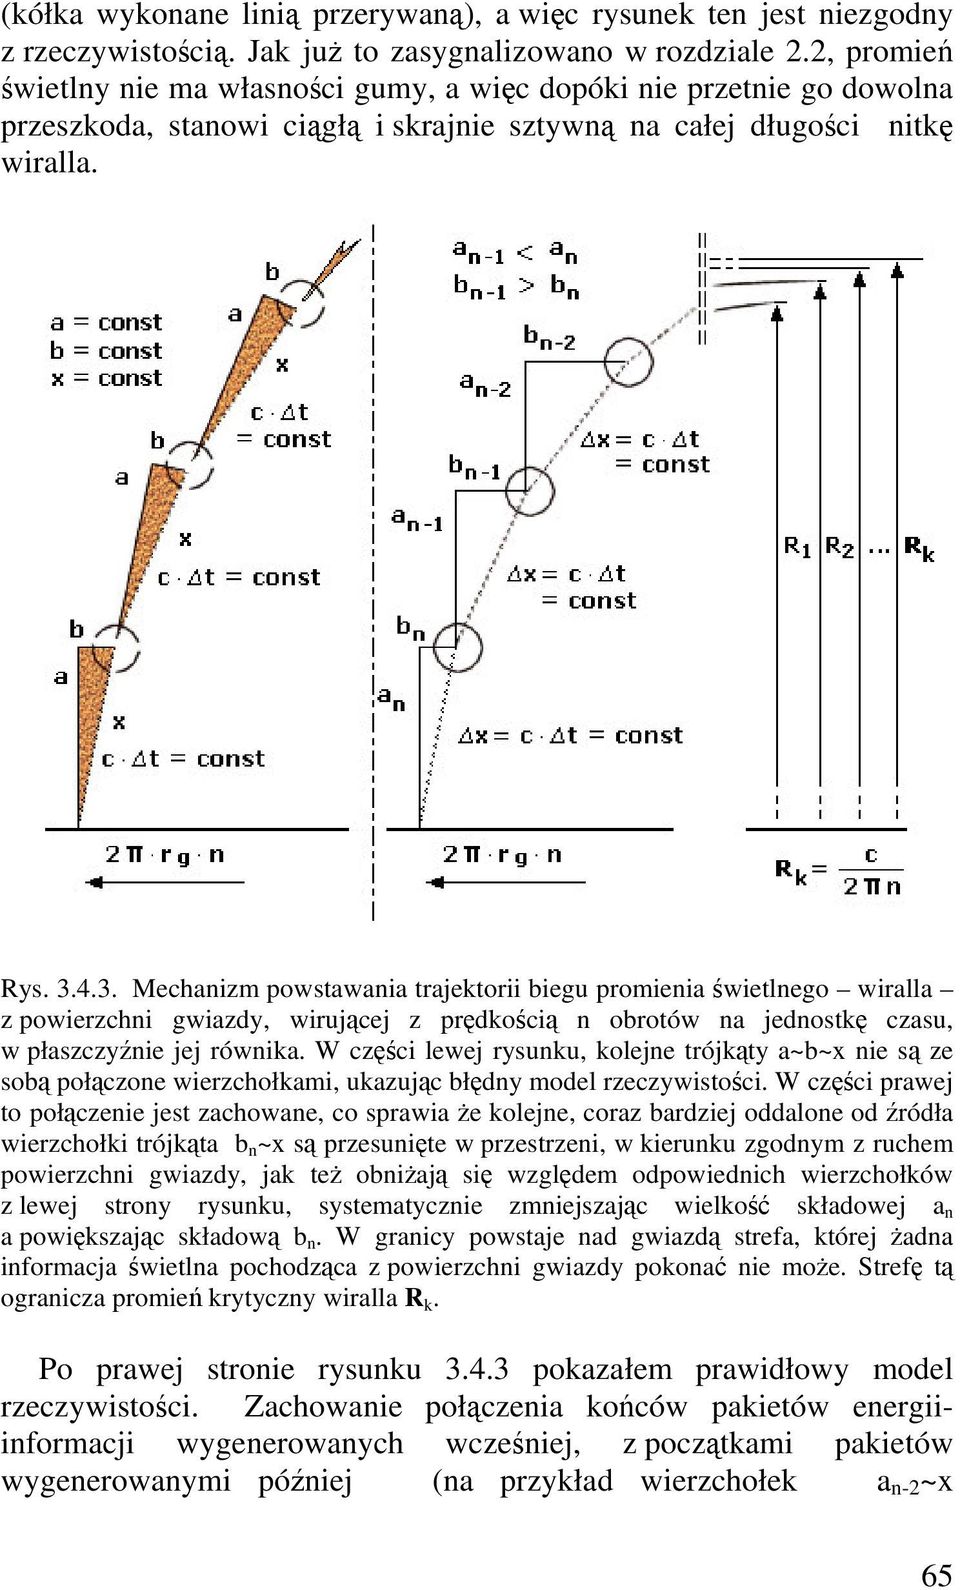 4.3. Mechanizm powstawania trajektorii biegu promienia wietlnego wiralla z powierzchni gwiazdy, wirujcej z prdkoci n obrotów na jednostk czasu, w płaszczynie jej równika.